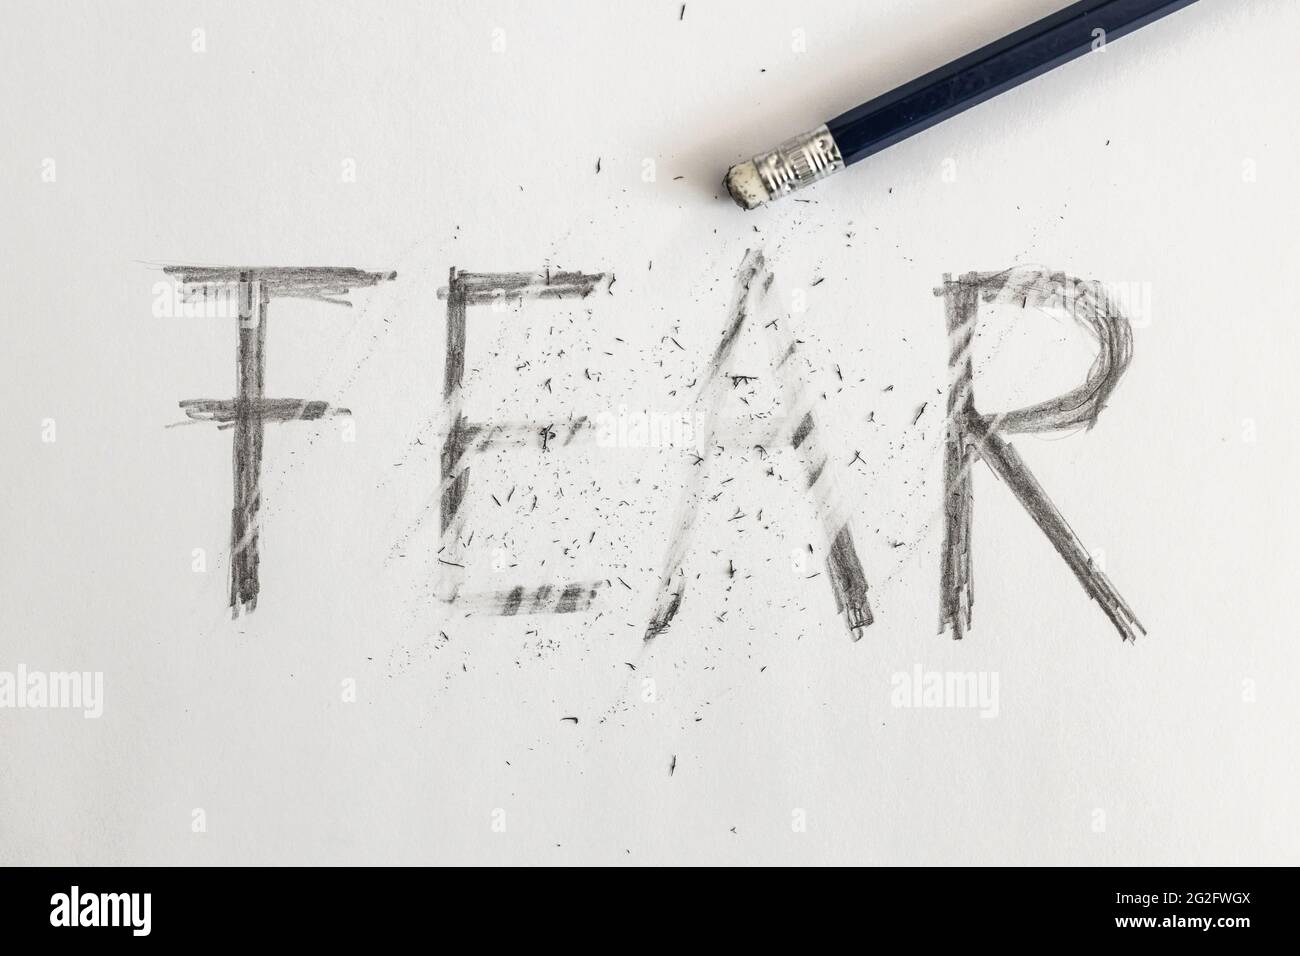 Angst löschen. Angst mit einem Bleistift auf weißem Papier geschrieben, mit einem Radierer ausradiert. Symbolisch für die Überwindung von Angst oder die Behandlung von Angst. Stockfoto